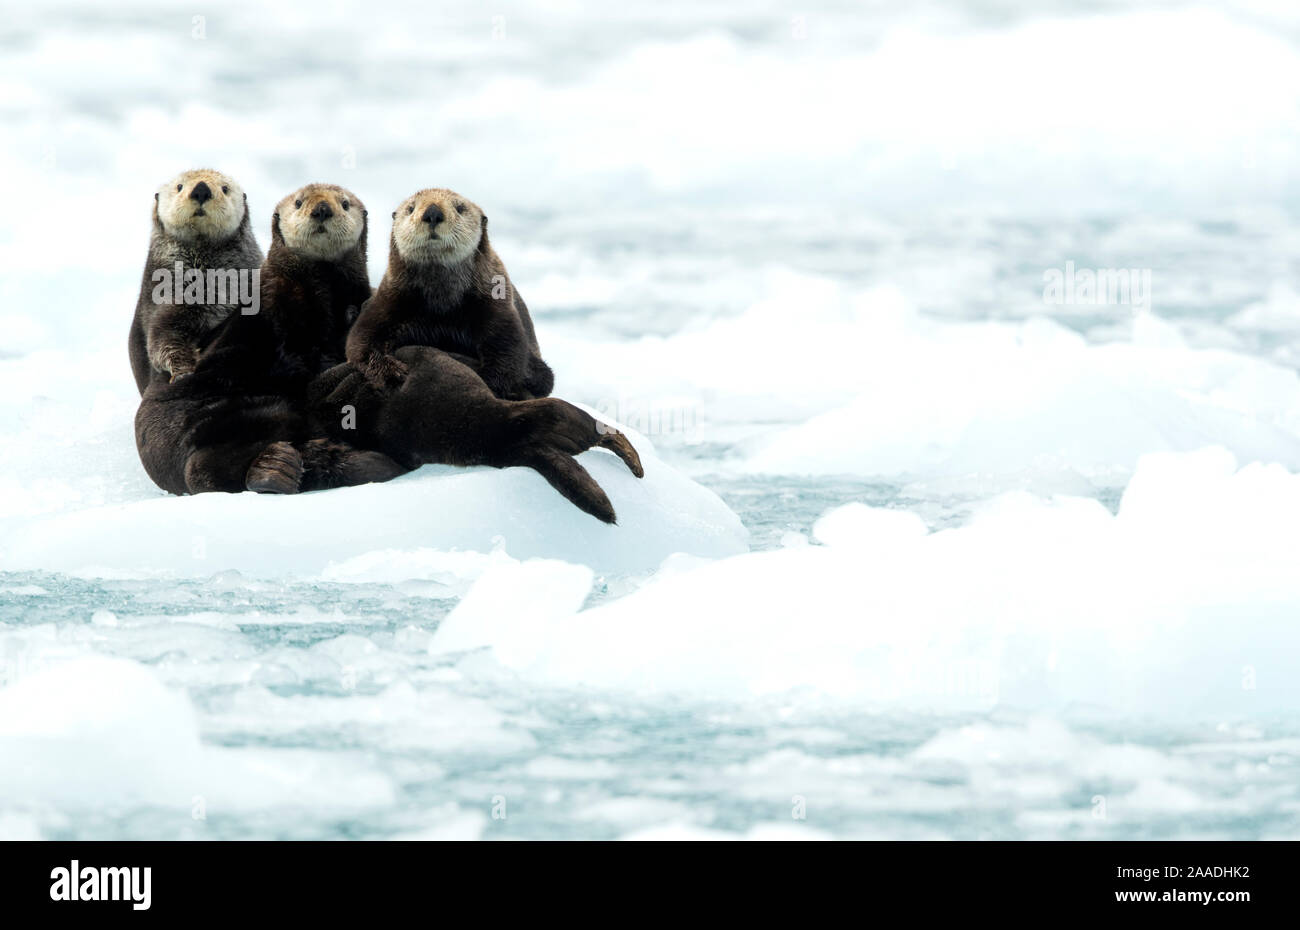 Three Sea otters (Enhydra lutris) resting on ice, Alaska, June Stock Photo